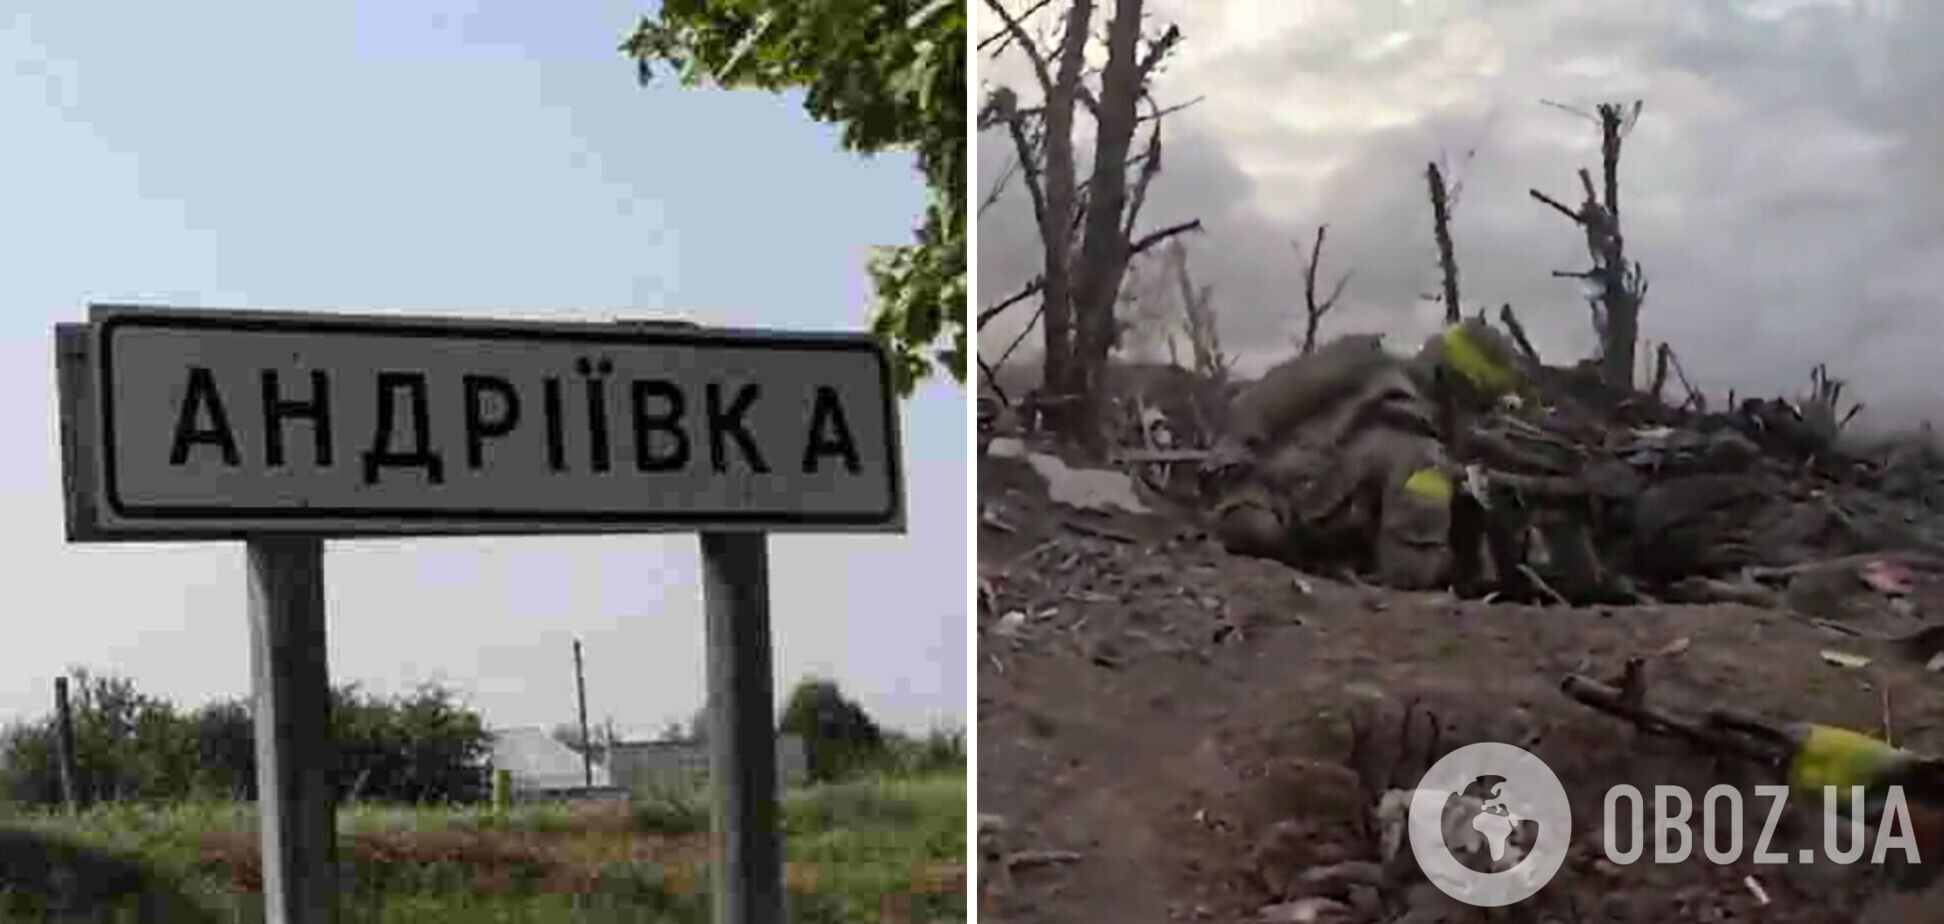 Выжженная земля пропитана кровью: штурмовики показали бои в районе Андреевки. Видео